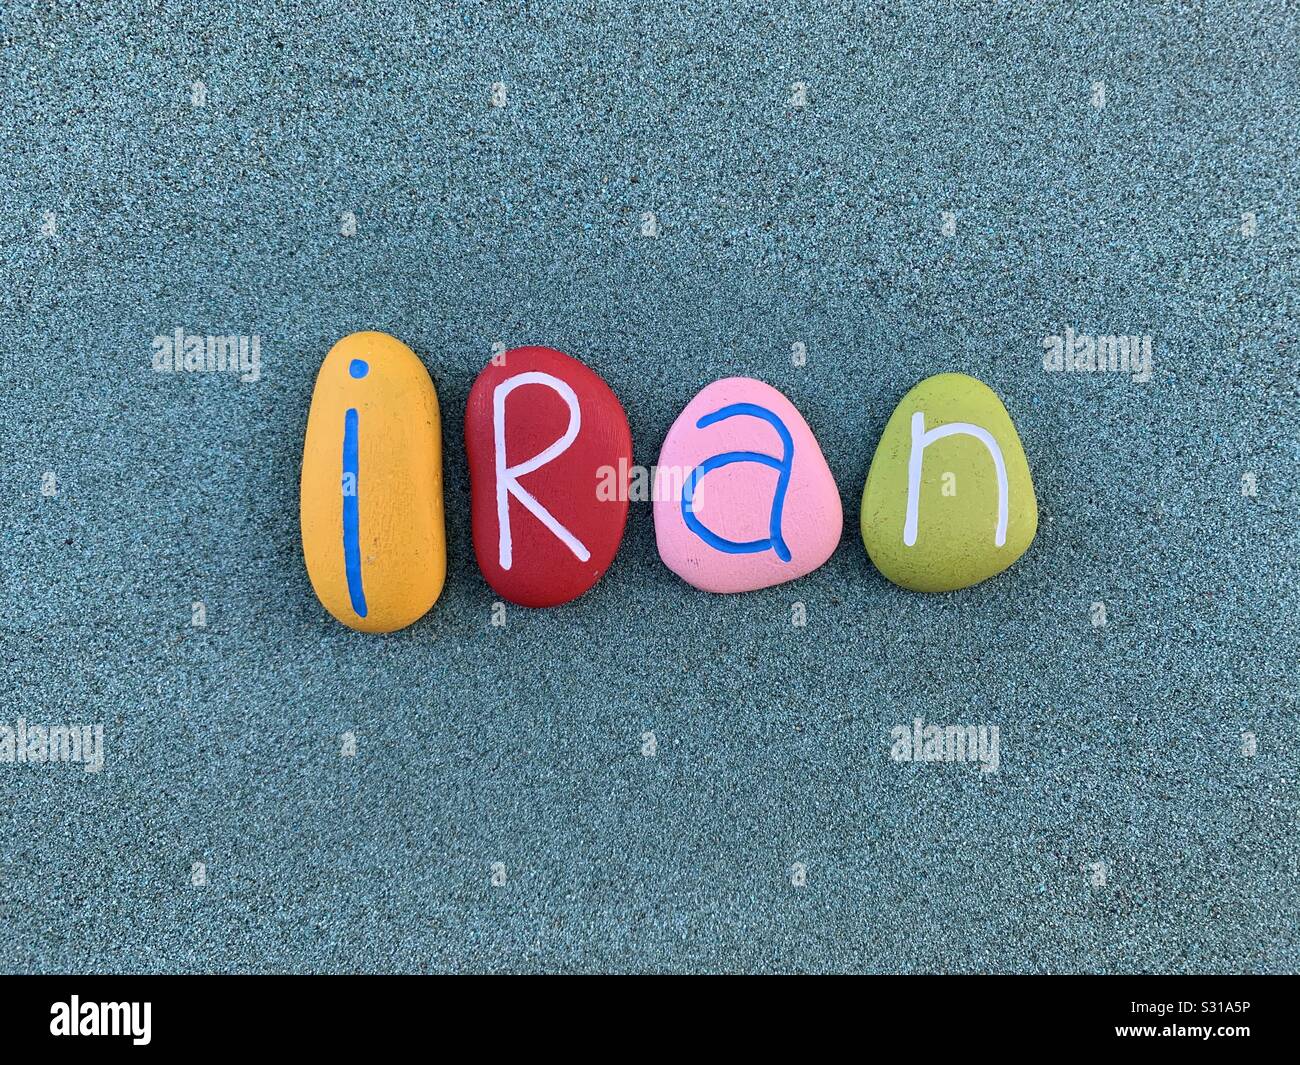 Irán, República Islámica de Irán, país en el Asia occidental, recuerdo con piedras multicolores letras en arena verde Foto de stock